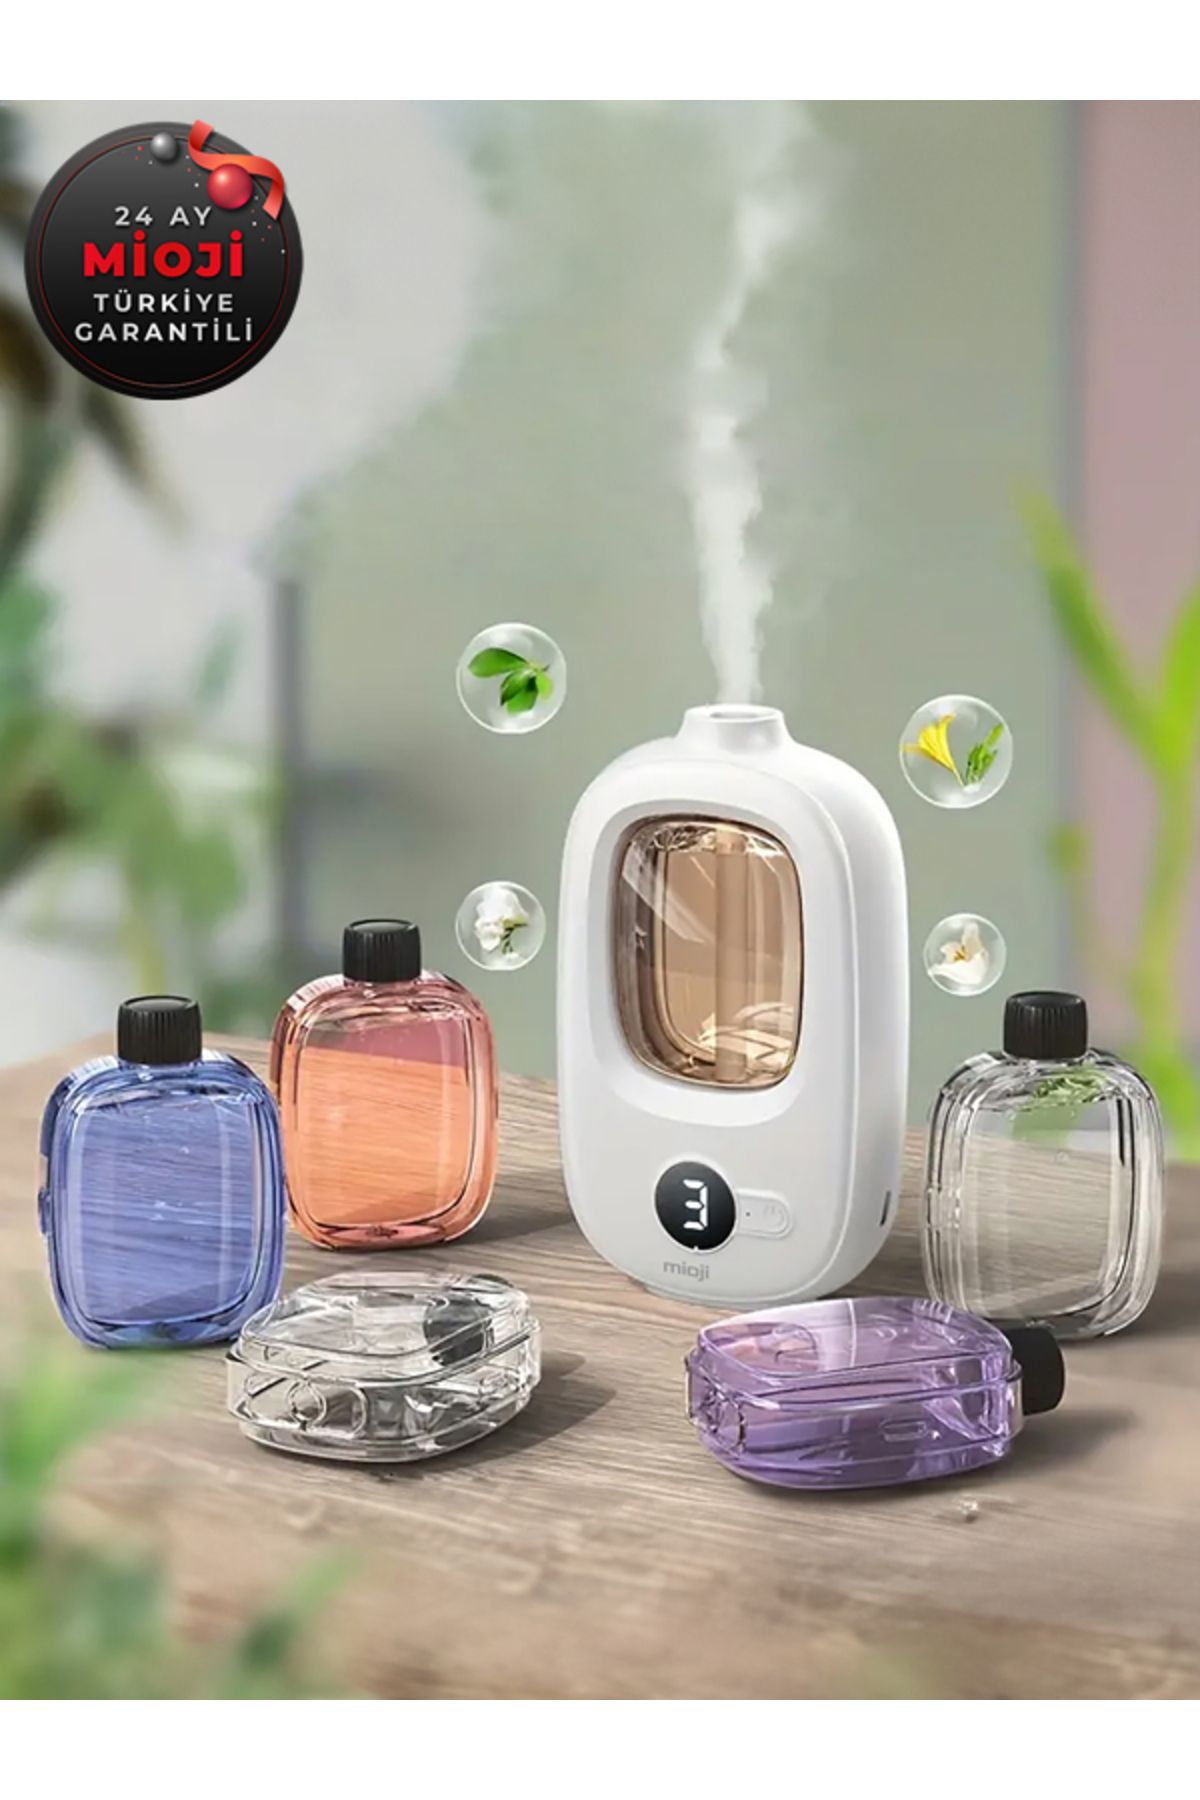 Mioji Mio Smell 2x Aromaterapi 1500mah Şarjlı Yeni Nesil Koku Makinesi Limon Kokusu